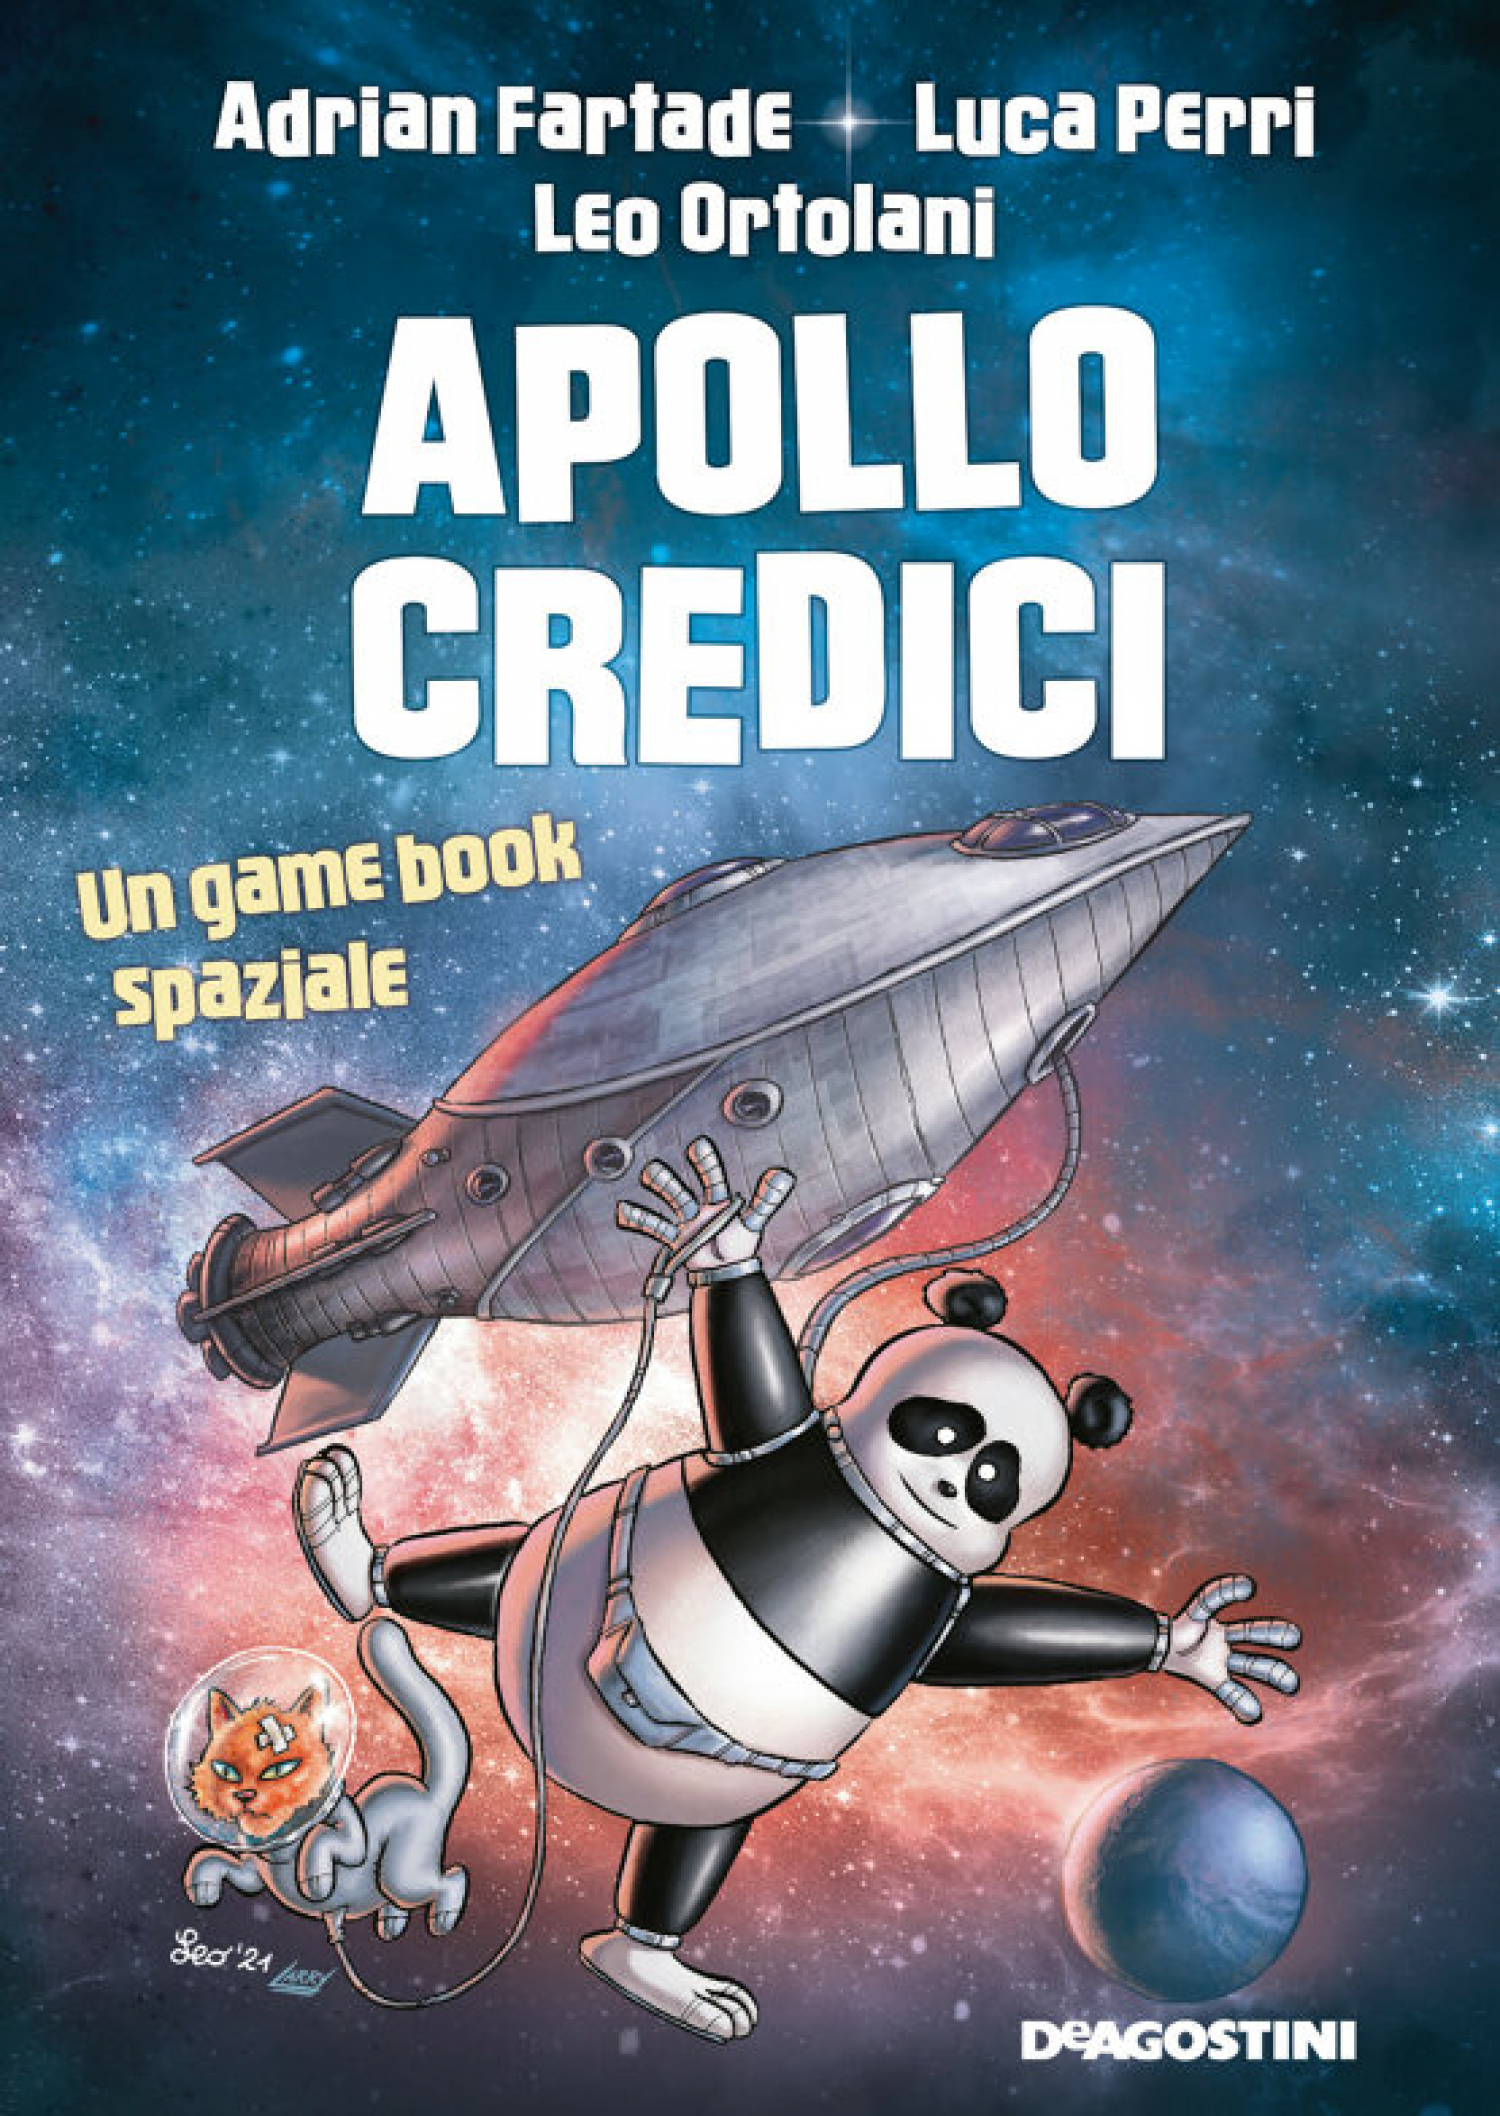 <p><strong>Sabato 11 dicembre alle 17:00 verr&agrave; presentato il game book spaziale <a target="_blank" href="https://www.deaplanetalibri.it/libri/apollo-credici">Apollo Credici</a>, realizzato da&nbsp;Adrian Fartade, Luca Perri e Leo Ortolani</strong> e pubblicato da DeA Planeta Libri. All&#39;incontro saranno presenti tutti e tre gli autori.</p><p>&nbsp;</p><p><em>Anno in corso: 2101 dell&rsquo;Era Comune</em></p><p><em>Temperatura esterna: 35 gradi centigradi</em></p><p><em>Caro lettore,</em></p><p><em>Questo libro esiste perch&eacute; tu hai deciso di aprirlo.</em></p><p><em>Forse potevi impiegare meglio il tuo tempo, ma&hellip; eccoti qui!</em></p><p><em>Io sono Schwa, raro esemplare di Pandalorian. La famiglia a cui appartengo vive indossando una soffice armatura a forma di panda e, per evitare che le discussioni degenerino, abbraccia tutti.</em></p><p><em>Bene: se dopo questa mia presentazione ancora non ti sei spaventato, sei pronto a partire insieme a me e ai miei coraggiosissimi compagni di avventura per un viaggio cosmico davvero elettrizzante.</em></p><p><em>Che cosa troverai in queste pagine? Loop temporali, immersioni tra galassie lontane anni luce, warmhole, buchi neri, supernove, asteroidi in collisione e pianeti sconosciuti.<br />Sarai tu a decidere in quale pasticcio cacciarti, finch&eacute; non ti rester&agrave; solo un&rsquo;opzione: il motore a improbabilit&agrave; infinita. Ovvero&hellip; un dado.</em></p><p>&nbsp;</p><p><strong>Adrian Fartade</strong> &egrave; un divulgatore scientifico celebre per il suo canale YouTube <a target="_blank" href="https://www.youtube.com/user/link4universe">Link4Universe</a>, dove racconta le pi&ugrave; recenti scoperte dell&rsquo;astronomia e dell&rsquo;astronautica. Ha tenuto monologhi sull&rsquo;esplorazione spaziale nelle scuole di tutta Italia e a teatro; &egrave; autore di diversi libri e, con Luca Perri, anche di tre podcast di successo.</p><p>&nbsp;</p><p><strong>Luca Perri</strong> &egrave; astrofisico dell&rsquo;Istituto nazionale di Astrofisica. Divulgatore su diversi media nazionali (tra cui Rai, &laquo;Repubblica&raquo;, &laquo;Corriere della Sera&raquo;, Focus, Radio Deejay e Radio24), conduce trasmissioni di Rai Cultura come Superquark+. Autore e formatore di De Agostini Scuola, con De Agostini ha pubblicato anche&nbsp;<em>Errori galattici</em>&nbsp;(2018),&nbsp;<em>Partenze a razzo!</em>&nbsp;(2019) e&nbsp;<em>Pinguini all&rsquo;Equatore</em>&nbsp;(2020).</p><p>&nbsp;</p><p><strong>Leo Ortolani</strong>, fra i pi&ugrave; grandi fumettisti italiani di tutti i tempi, &egrave; il celebre pap&agrave; di Rat-Man. Il suo stile ironico e inconfondibile &egrave; amato dal pubblico di ogni et&agrave; e gli &egrave; valso numerosi riconoscimenti, tra cui il Premio Micheluzzi (vinto negli anni 1998, 2000, 2003, 2006, 2008, 2011, 2015, 2016 e 2017).</p><p>&nbsp;</p>